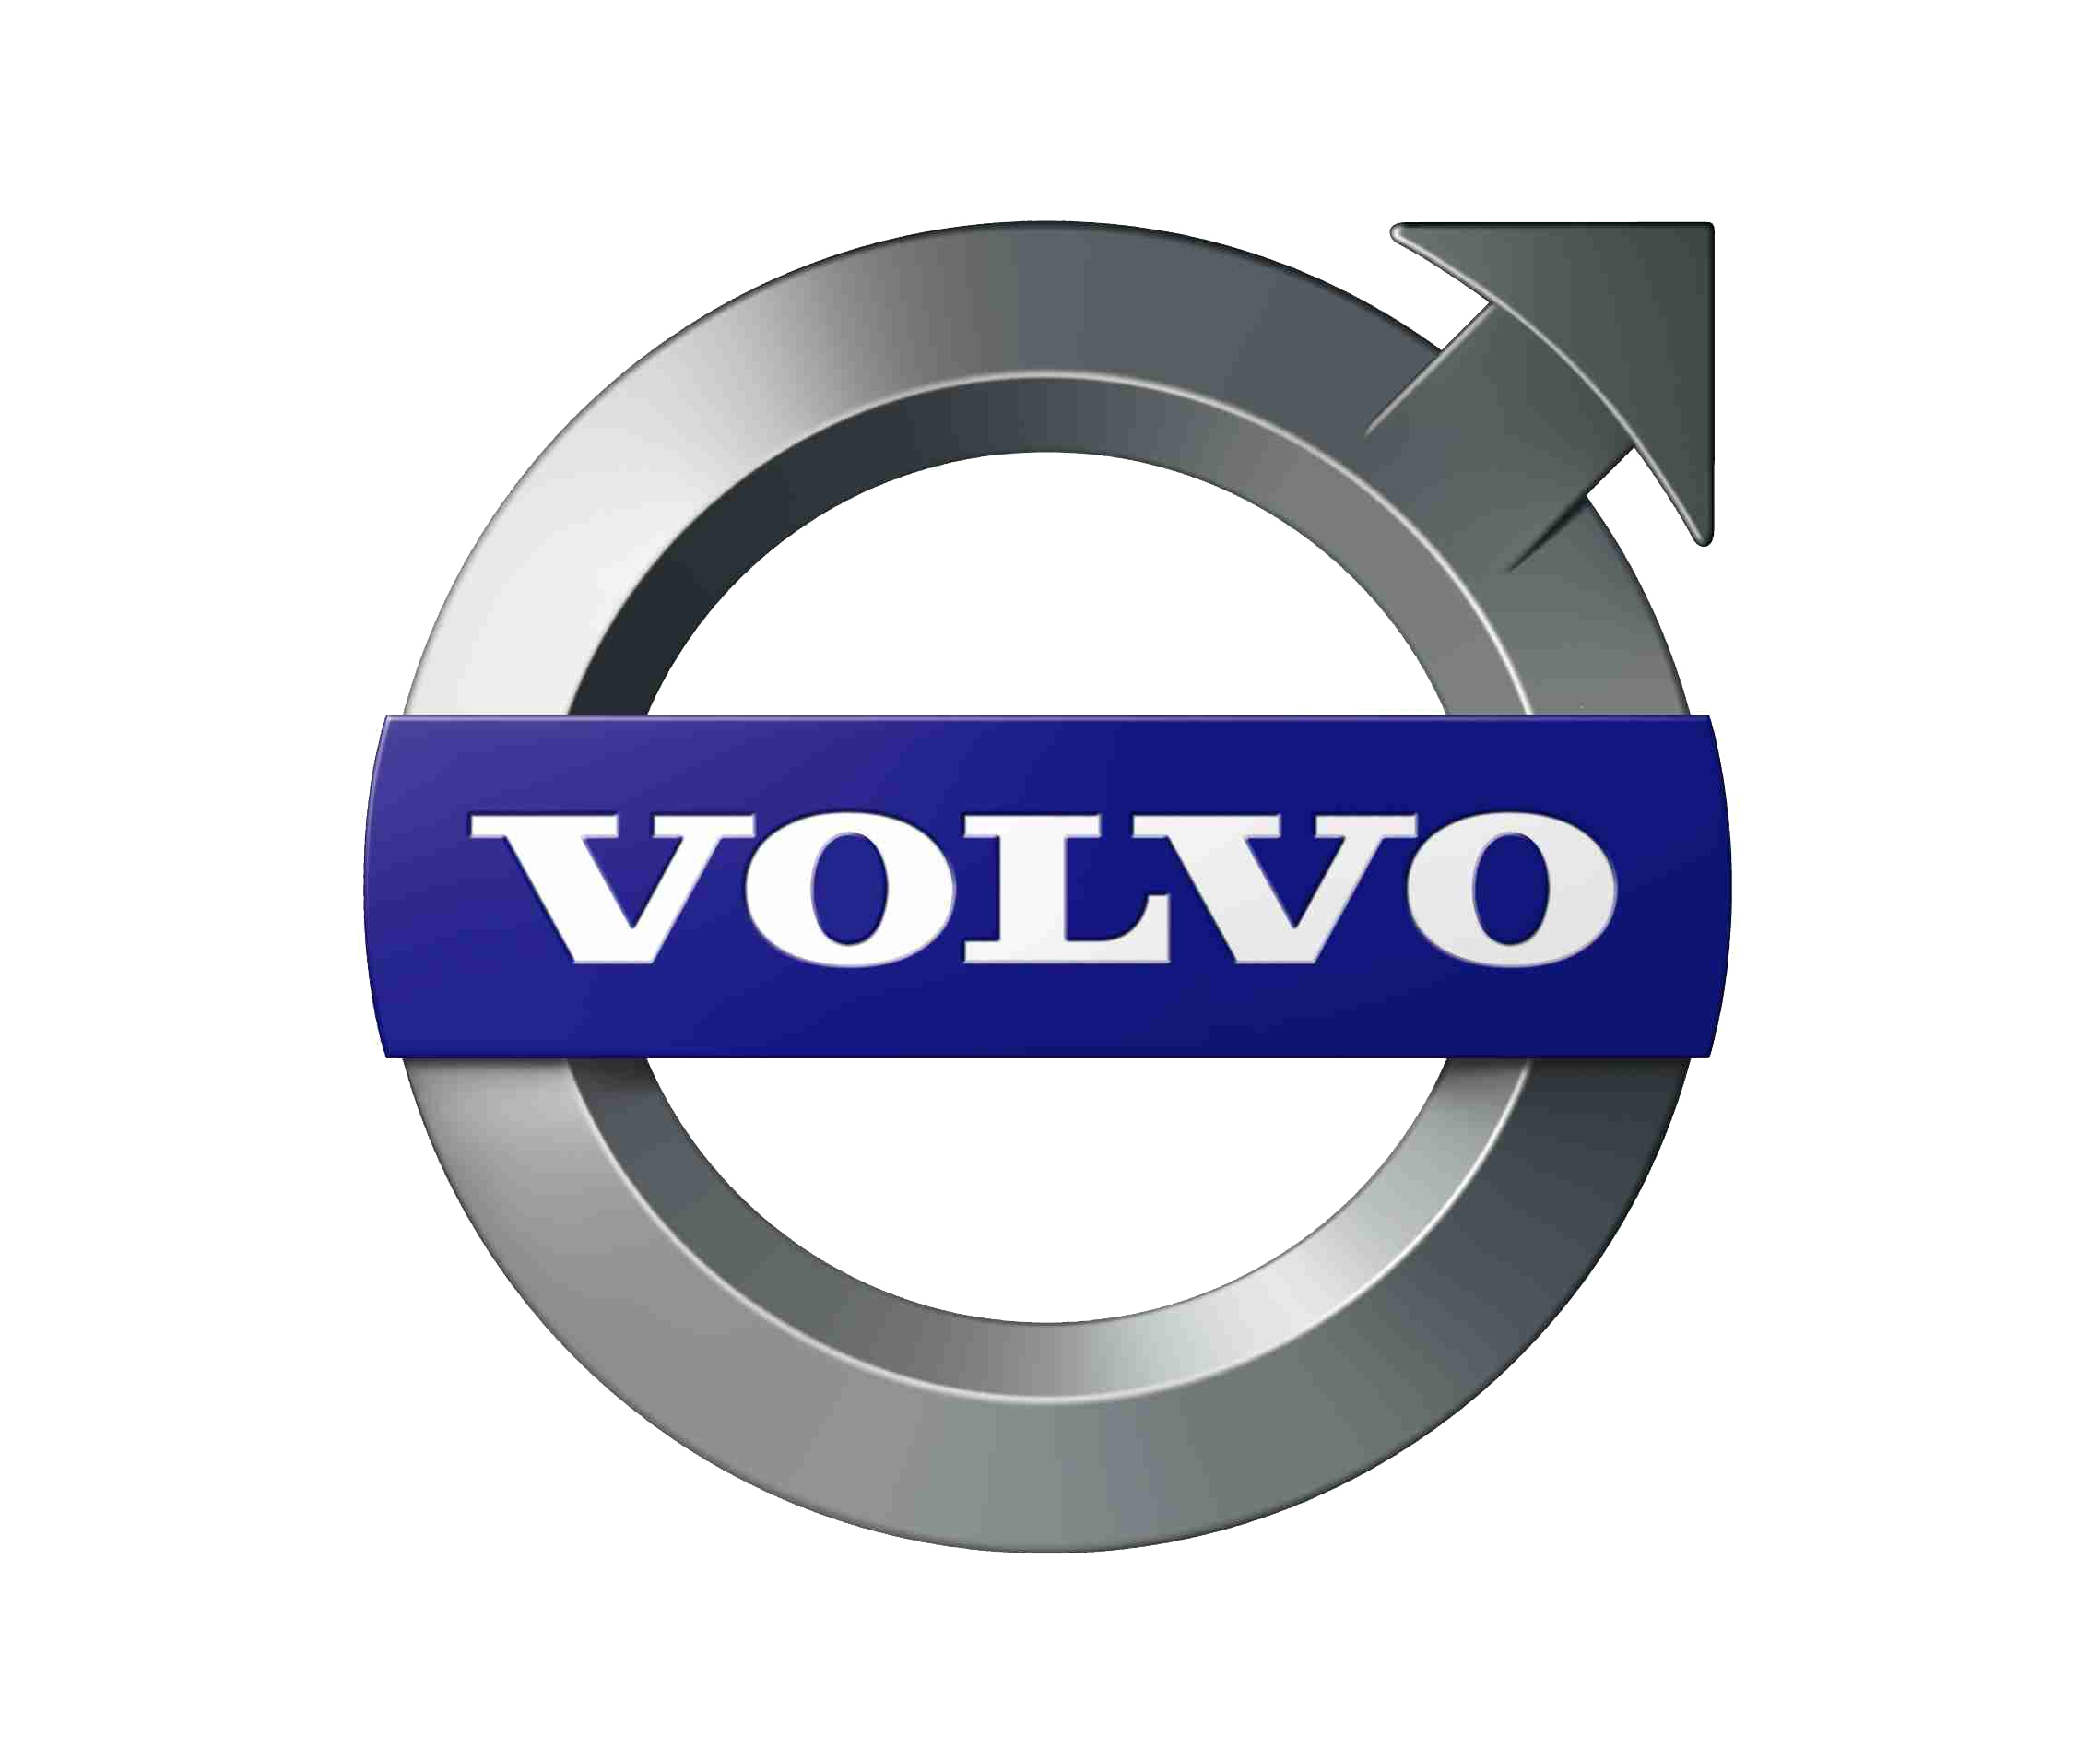 Volvo clipart.